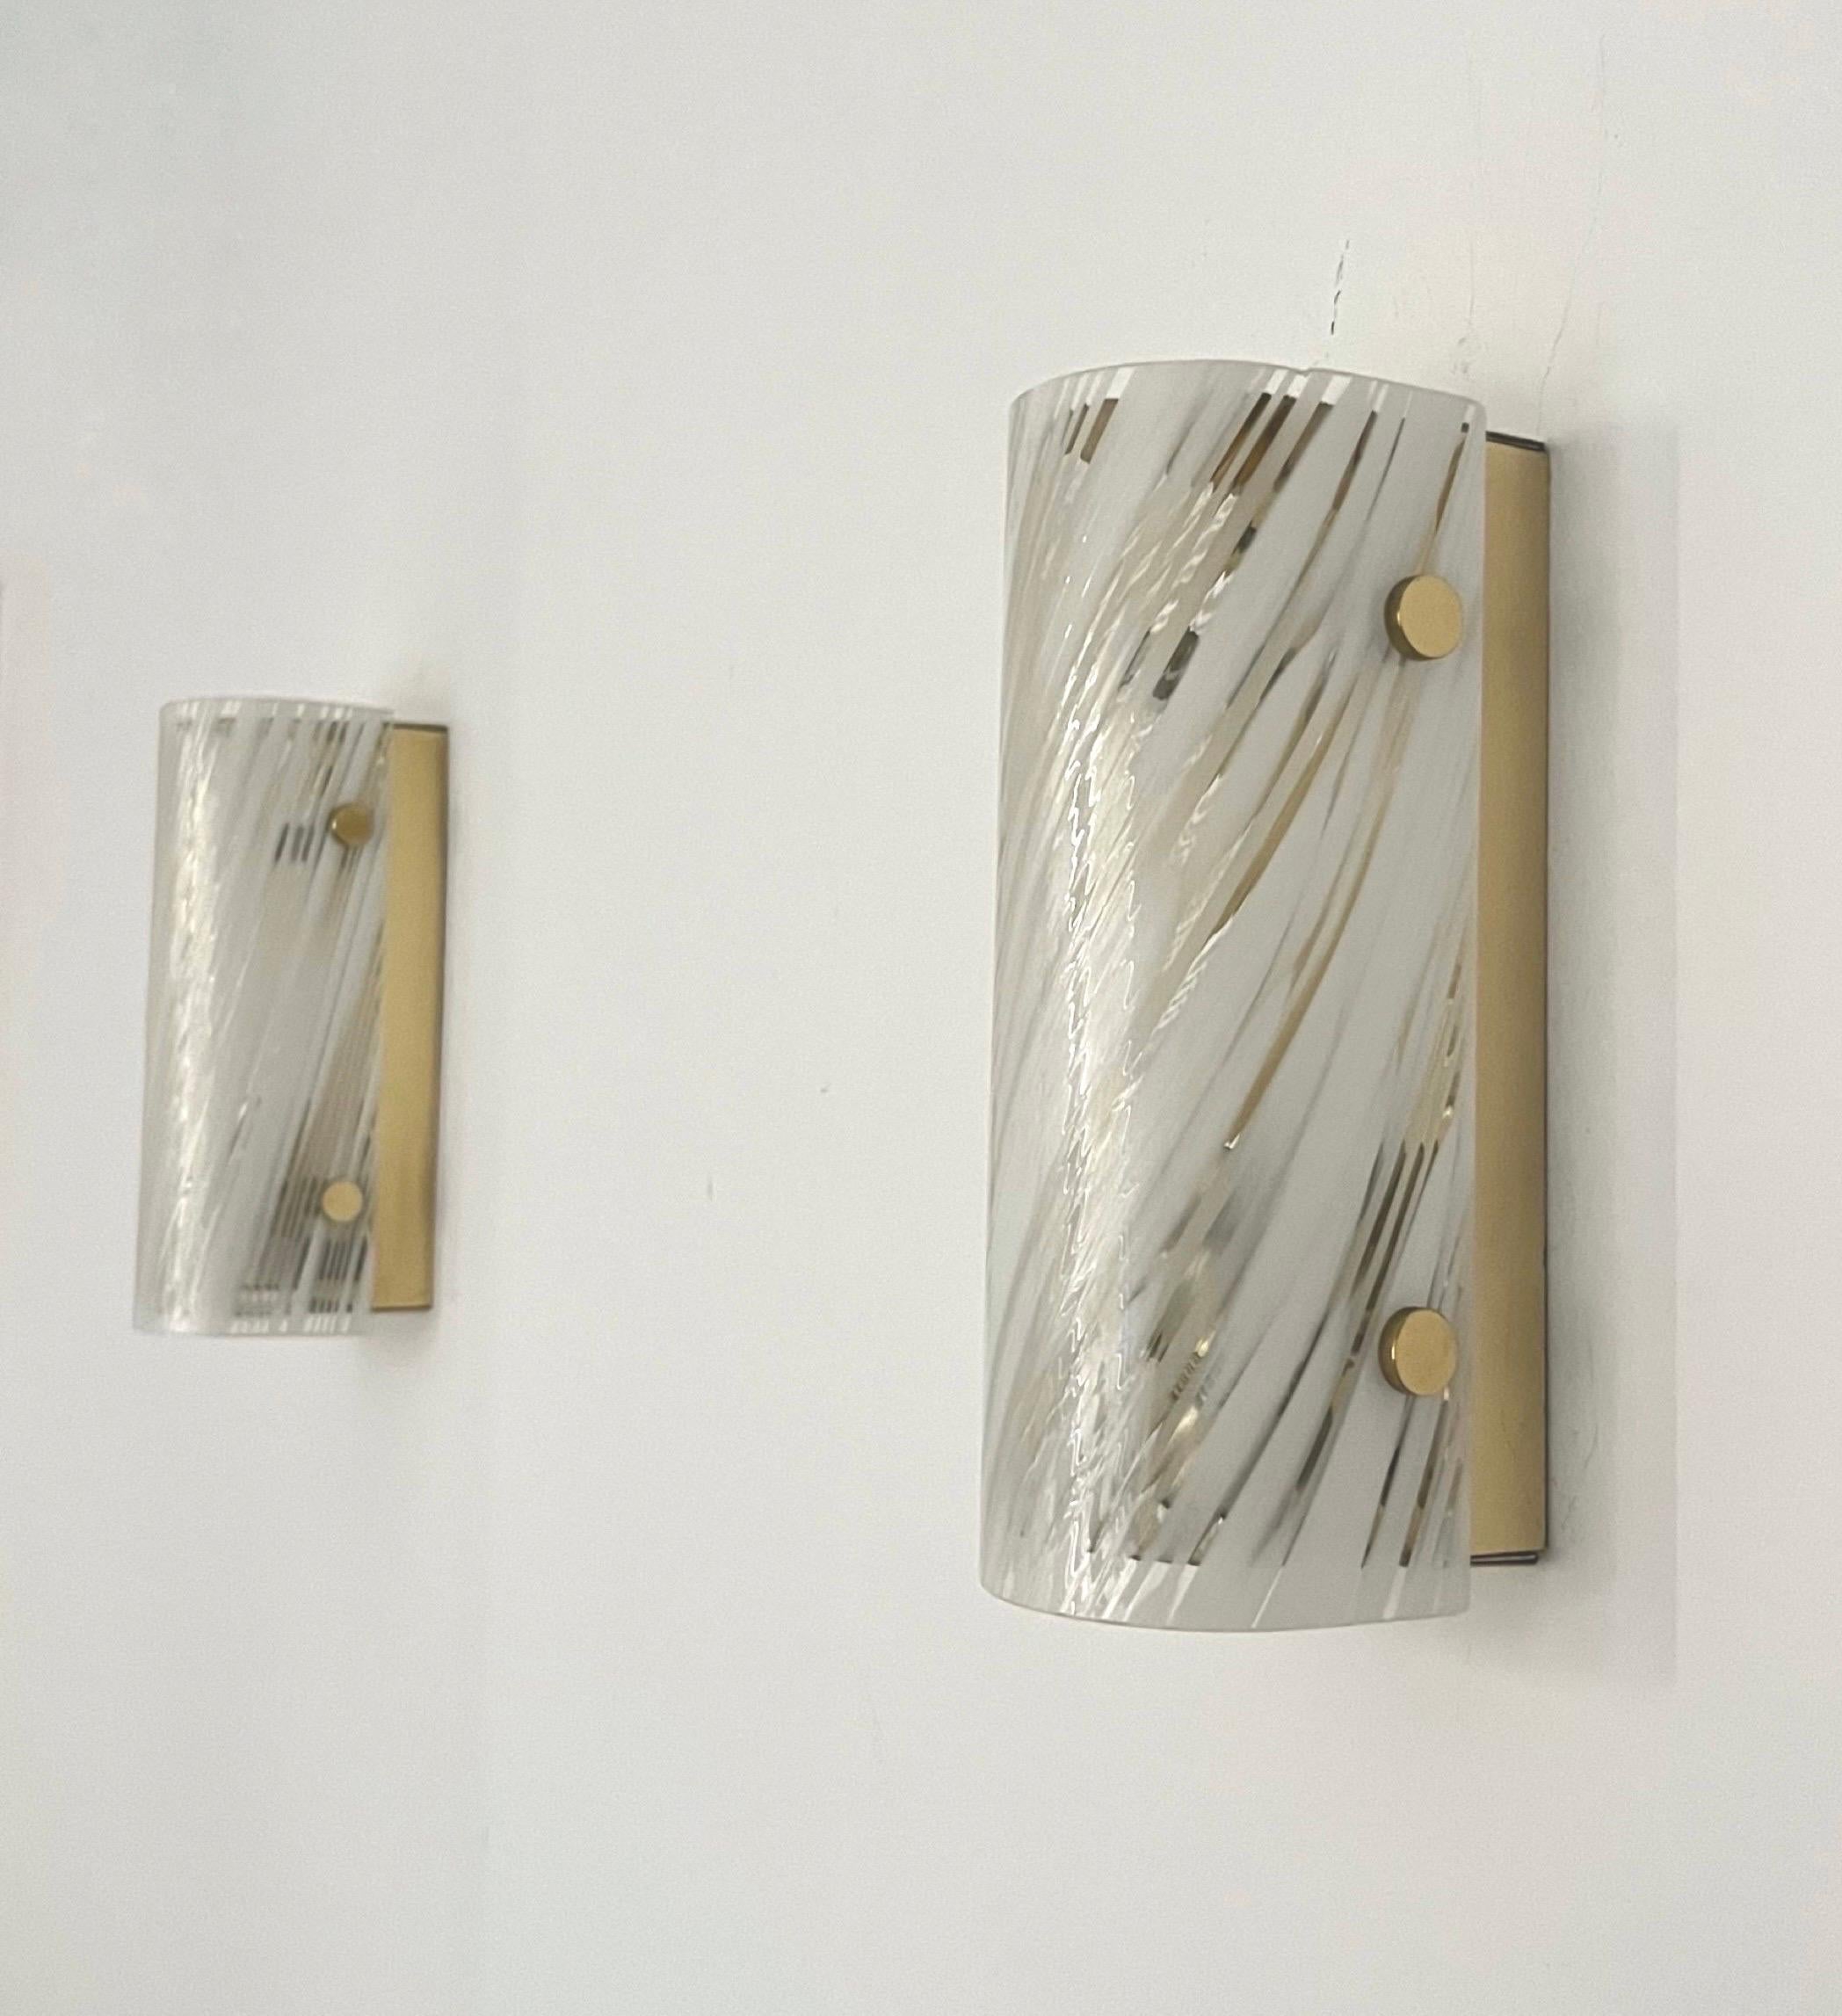 Einzigartiges und hübsches deutsches Paar Wandleuchter aus weißem Muranoglas von Hillebrand. Diese Armaturen wurden in den 1970er Jahren in Deutschland entworfen und hergestellt. Modell: 8791-121, originales 